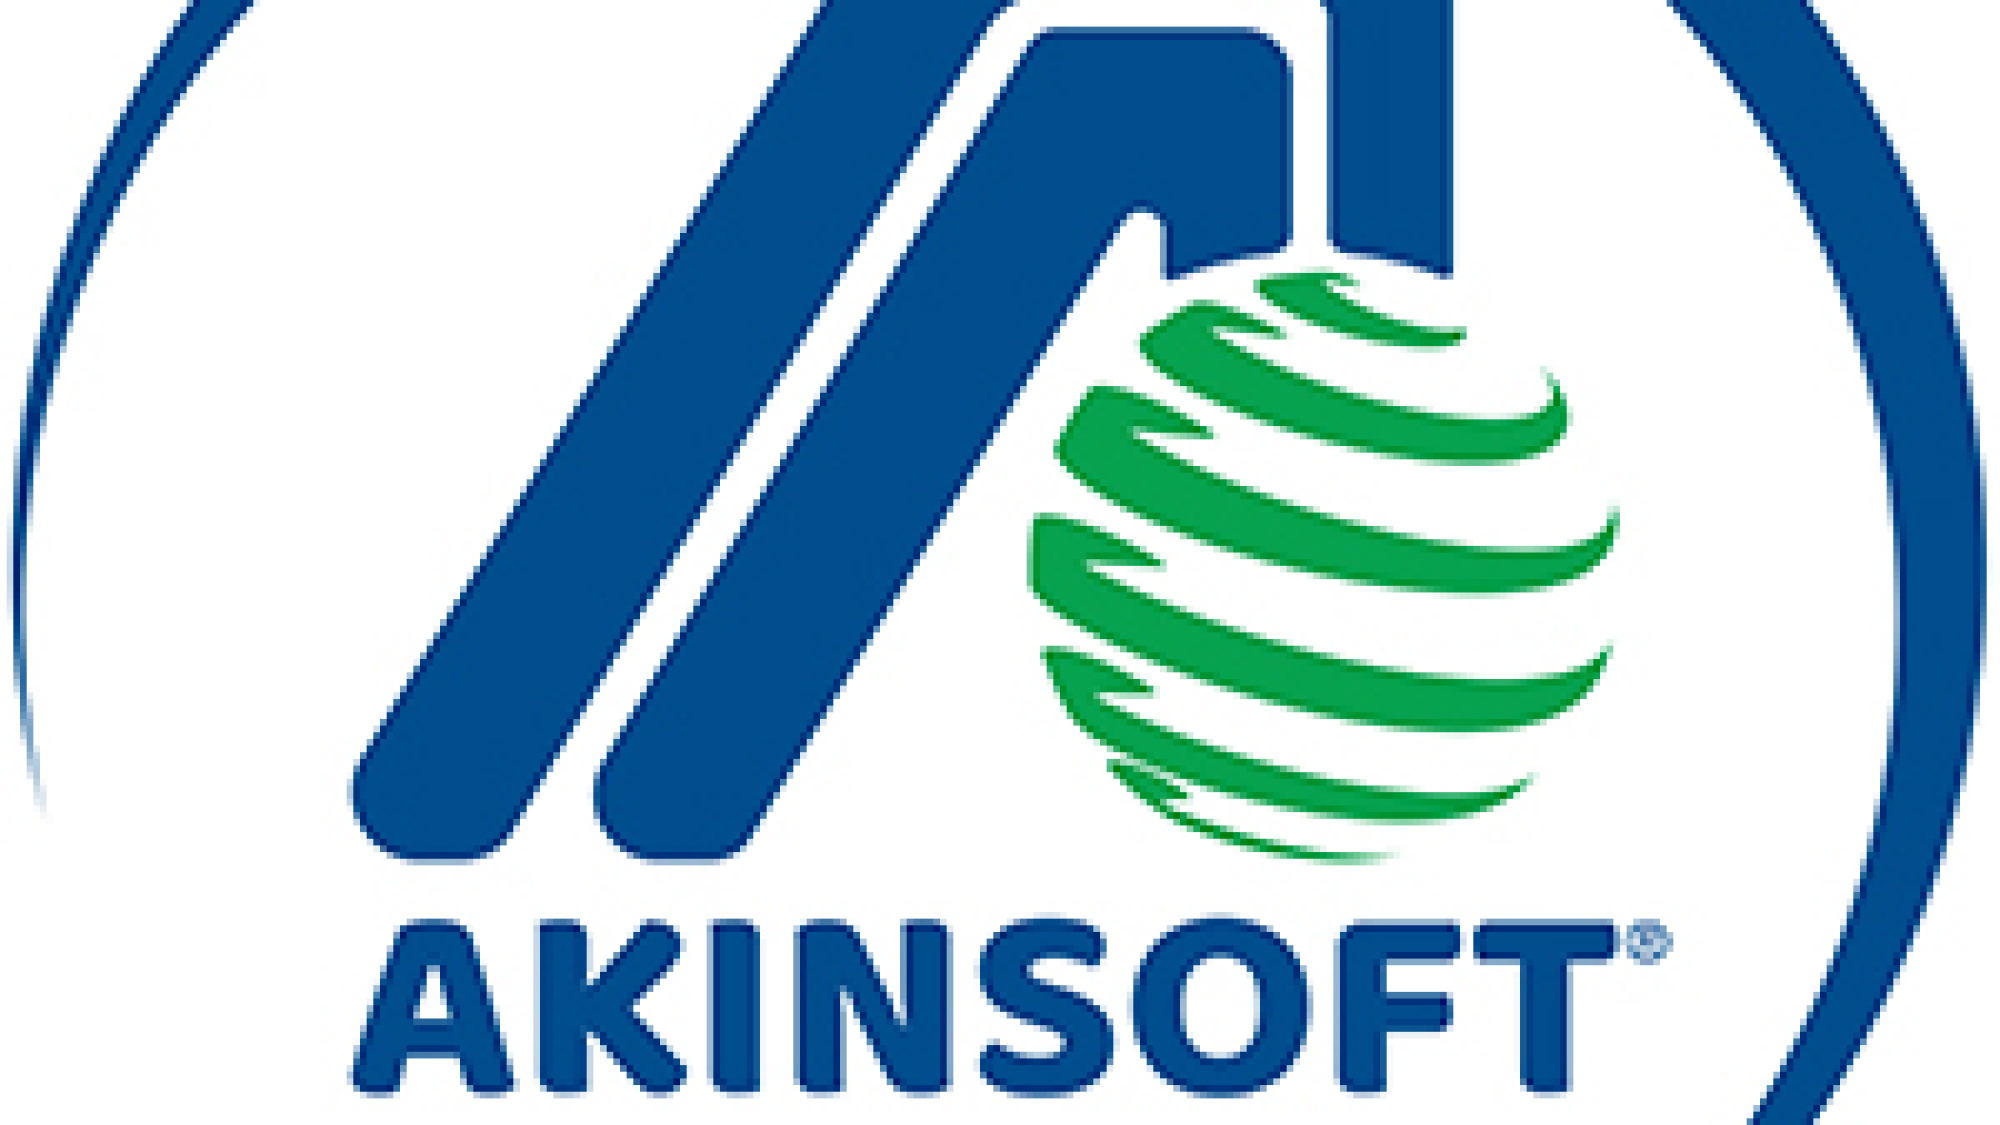 Akinsoft